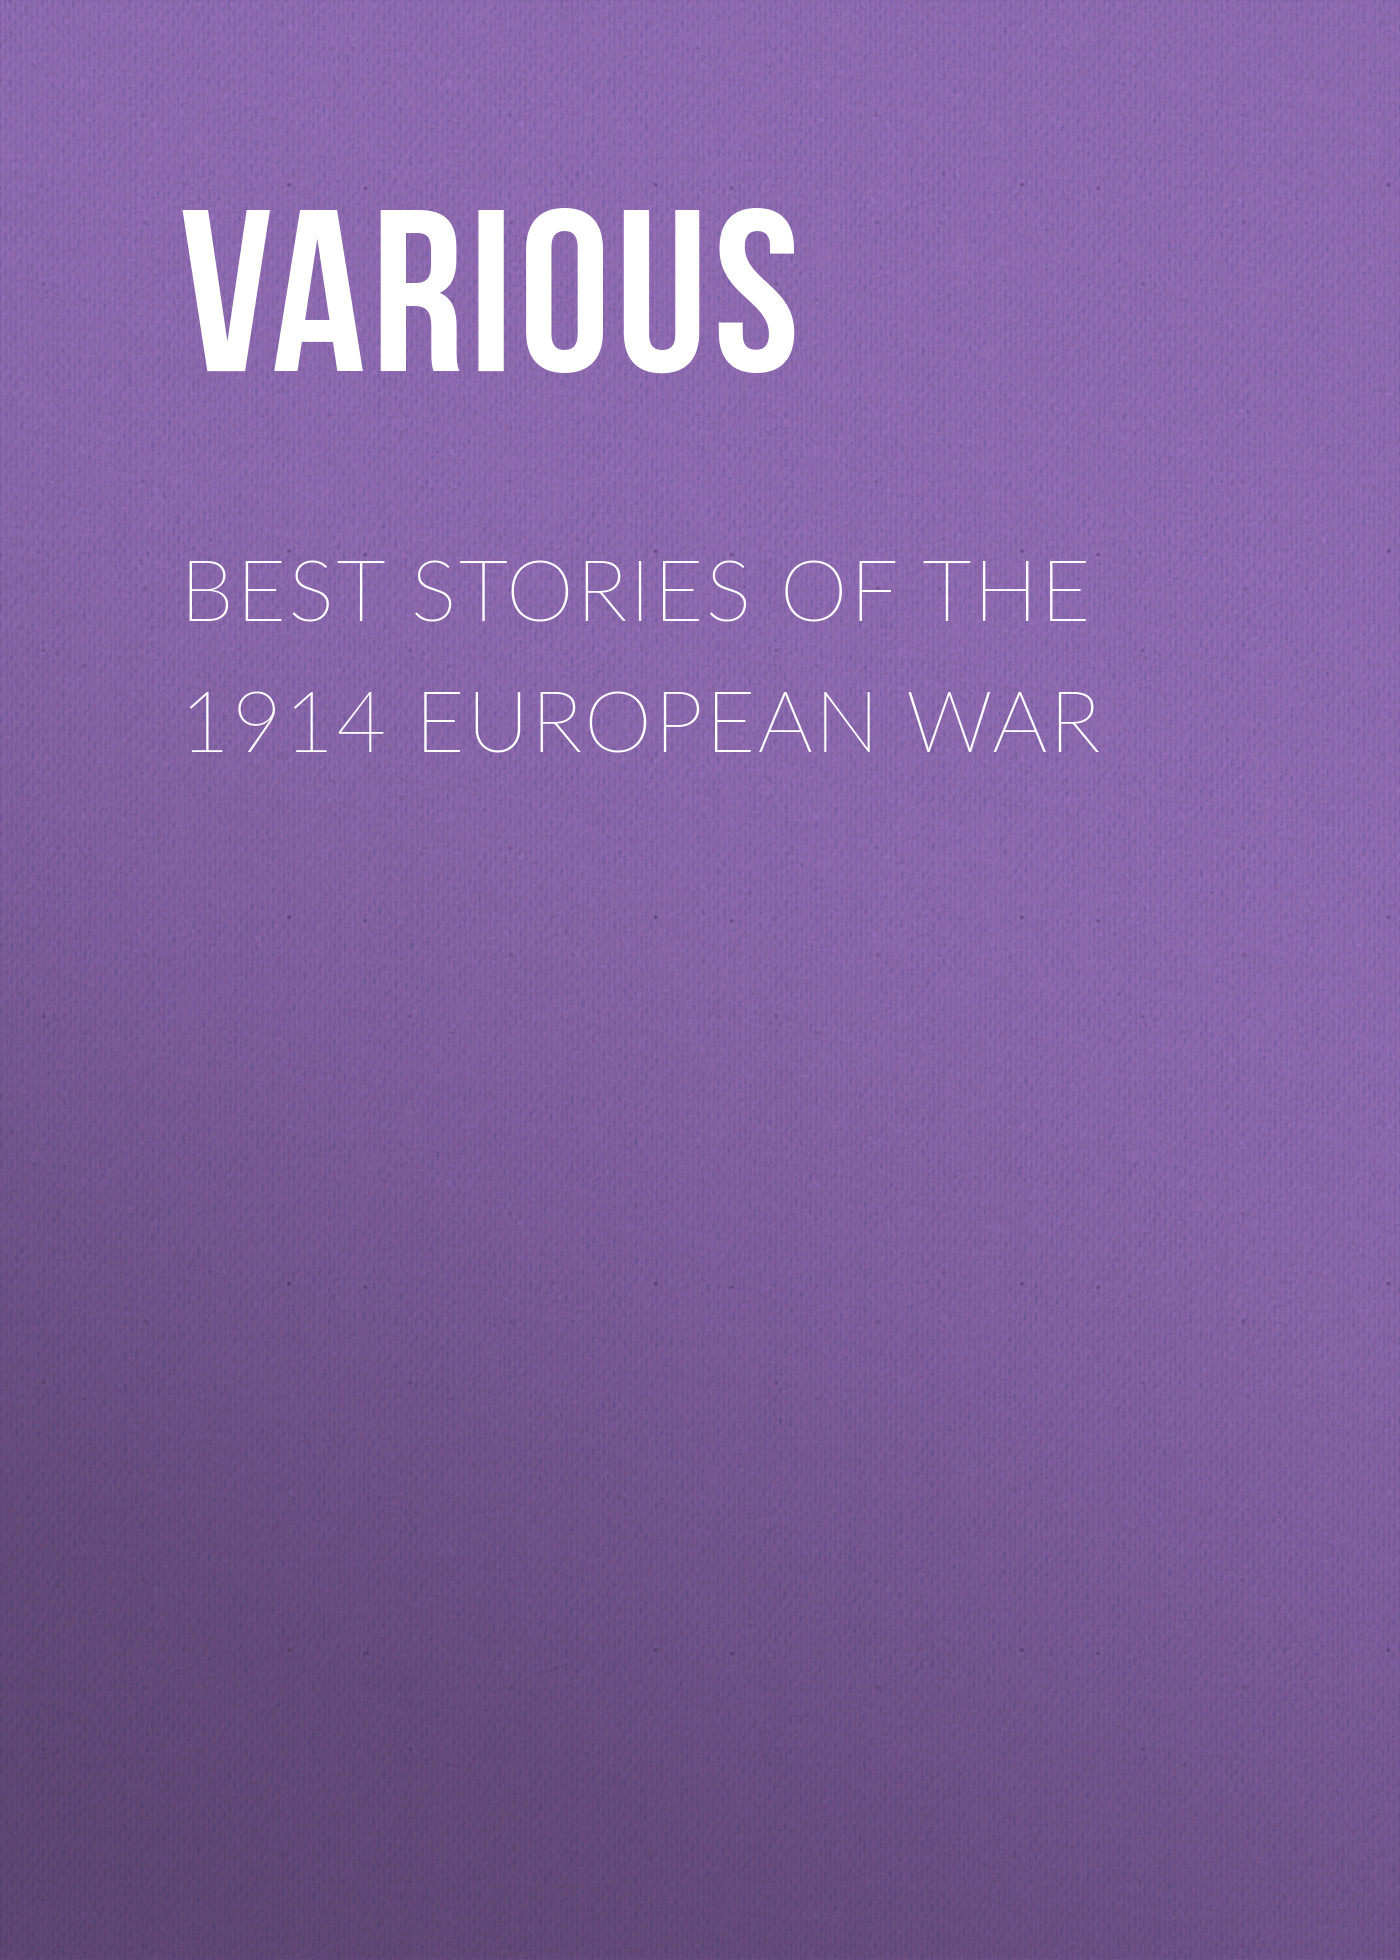 Книга Best Stories of the 1914 European War из серии , созданная  Various, может относится к жанру История, Зарубежная образовательная литература. Стоимость электронной книги Best Stories of the 1914 European War с идентификатором 25568935 составляет 0 руб.